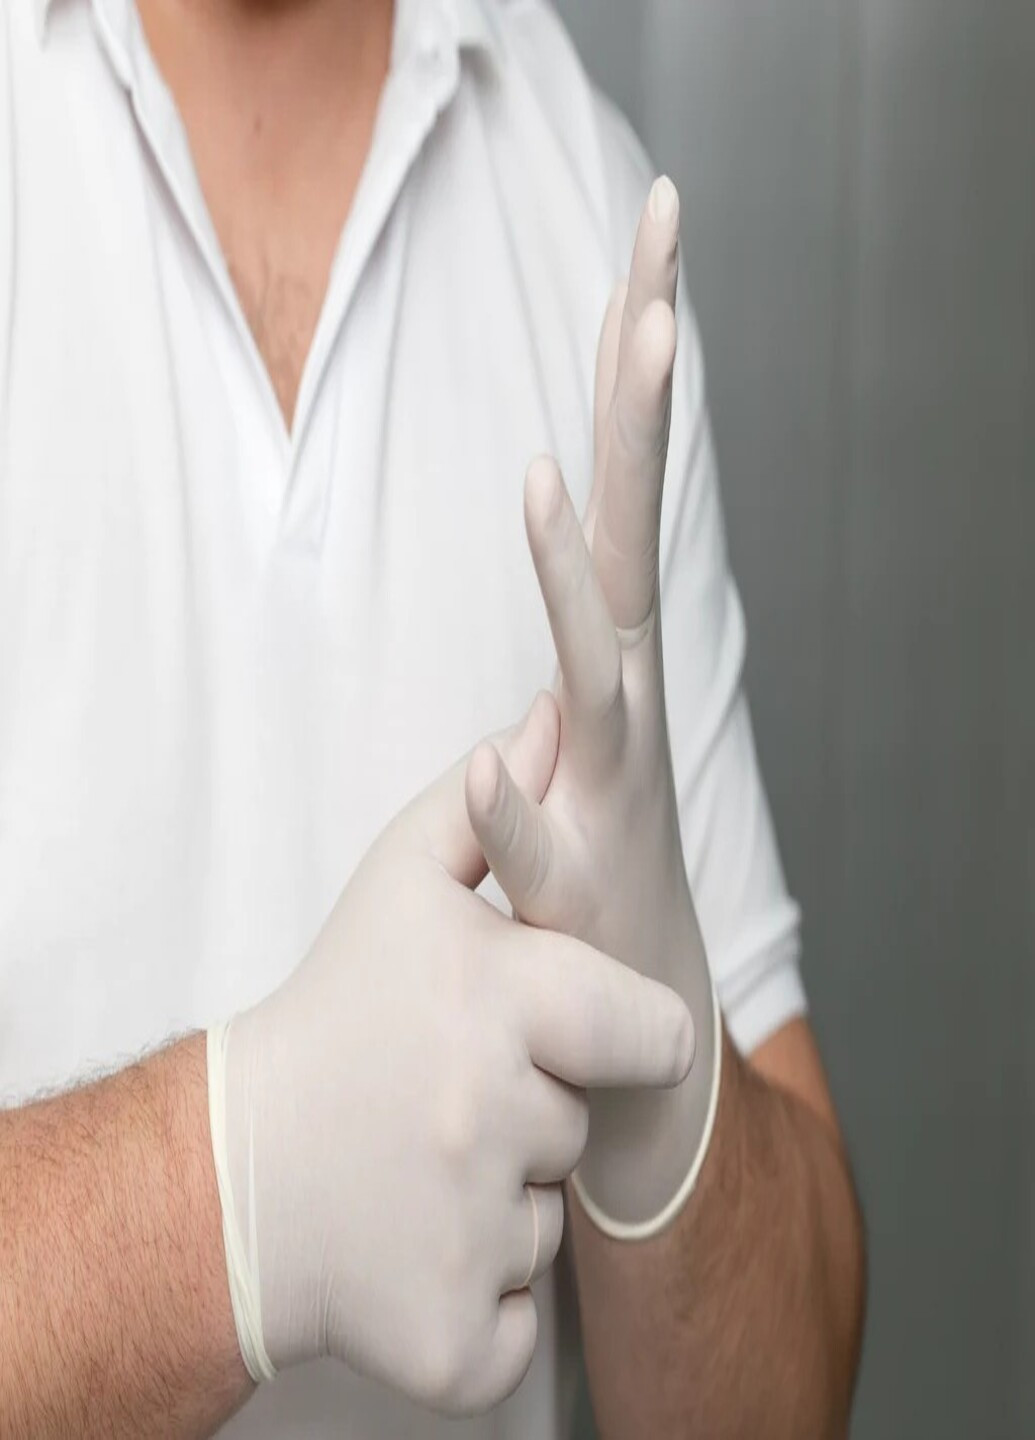 Латексні рукавички SafeTouch® опудрені текстуровані розмір M 100 шт. Білі Medicom (254168503)